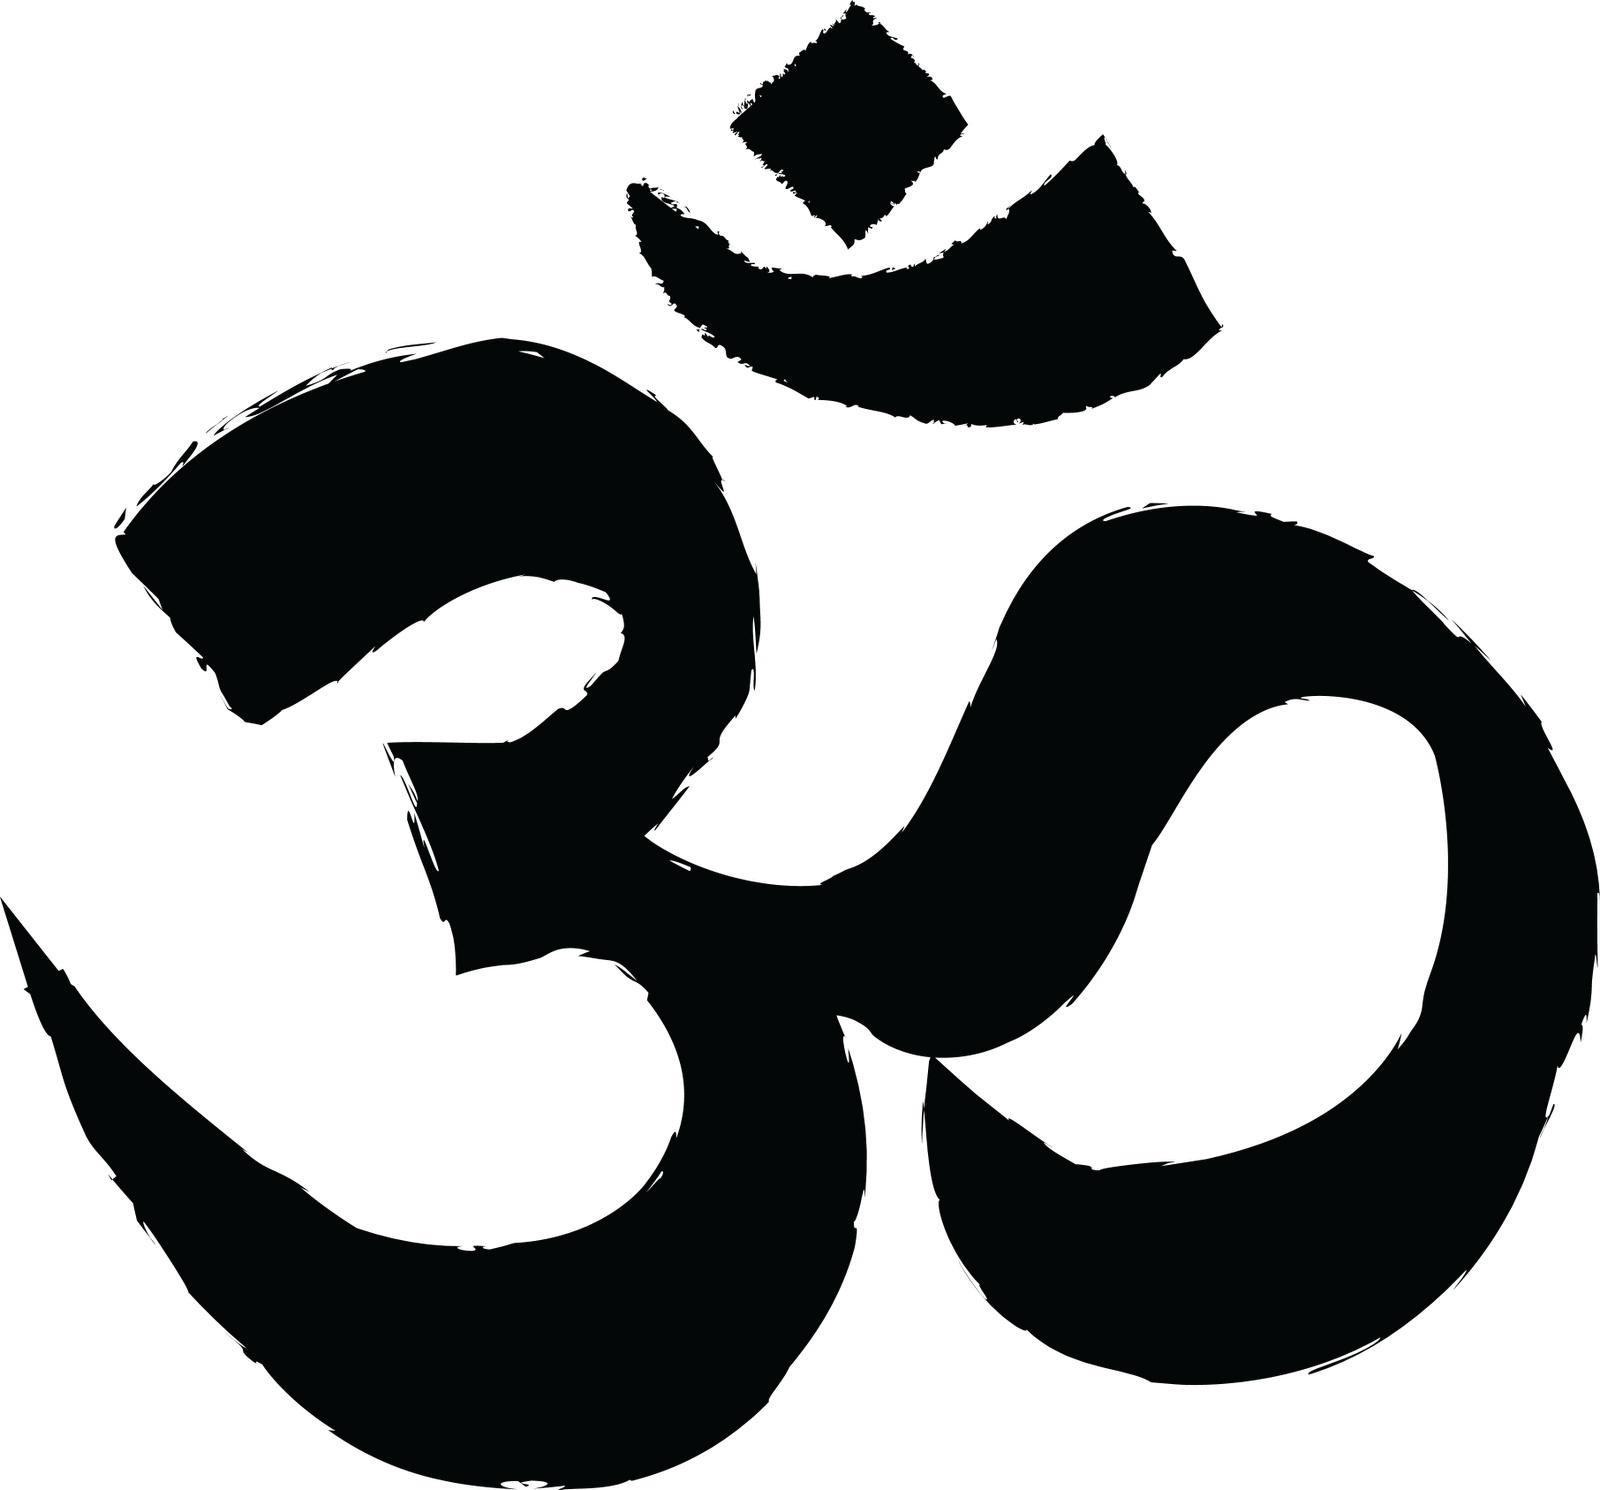 الهندوسية logo جودة عالية الدقة